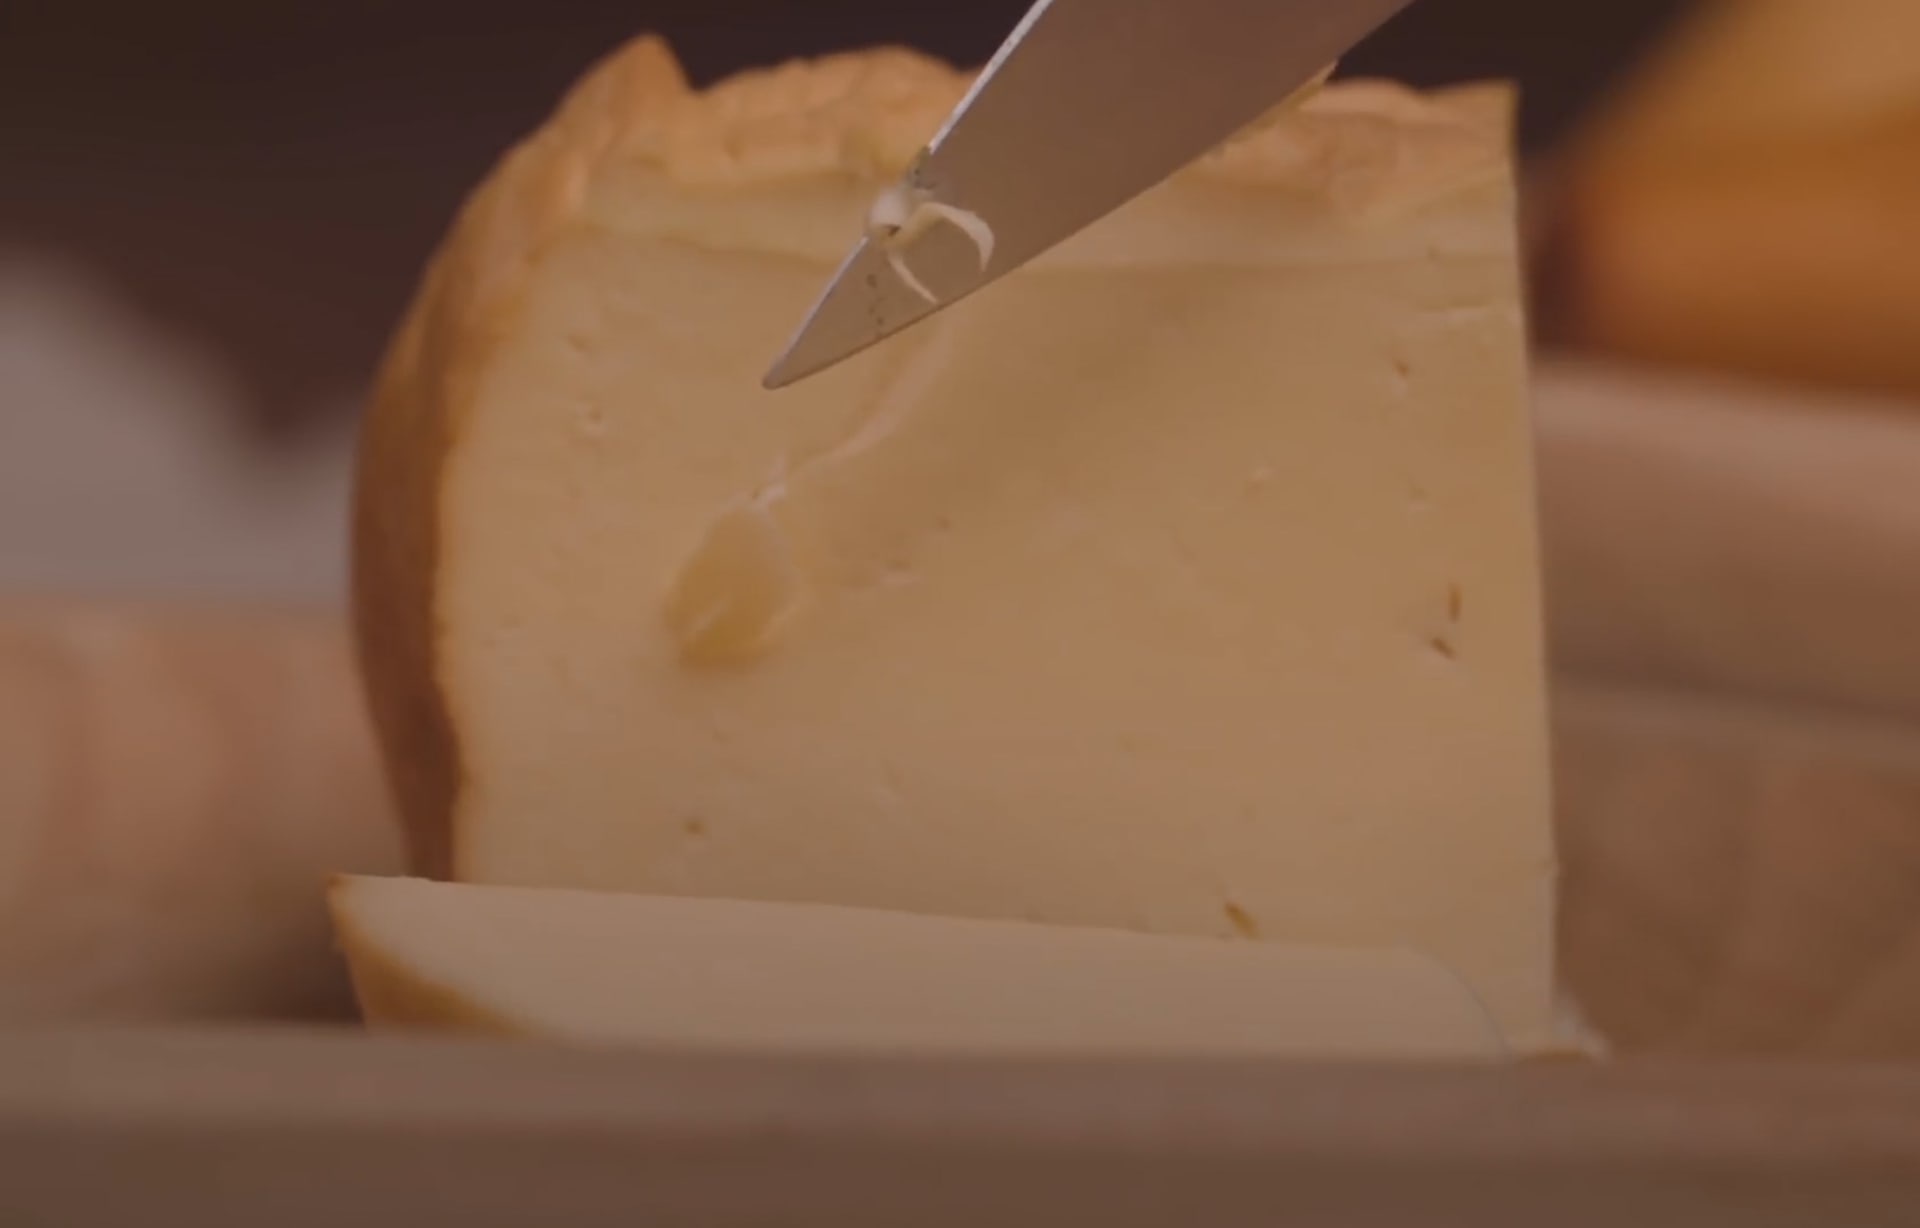 هذا الجبن الذهبي النادر يصنع فقط في الجبال البولندية Cnn Arabic